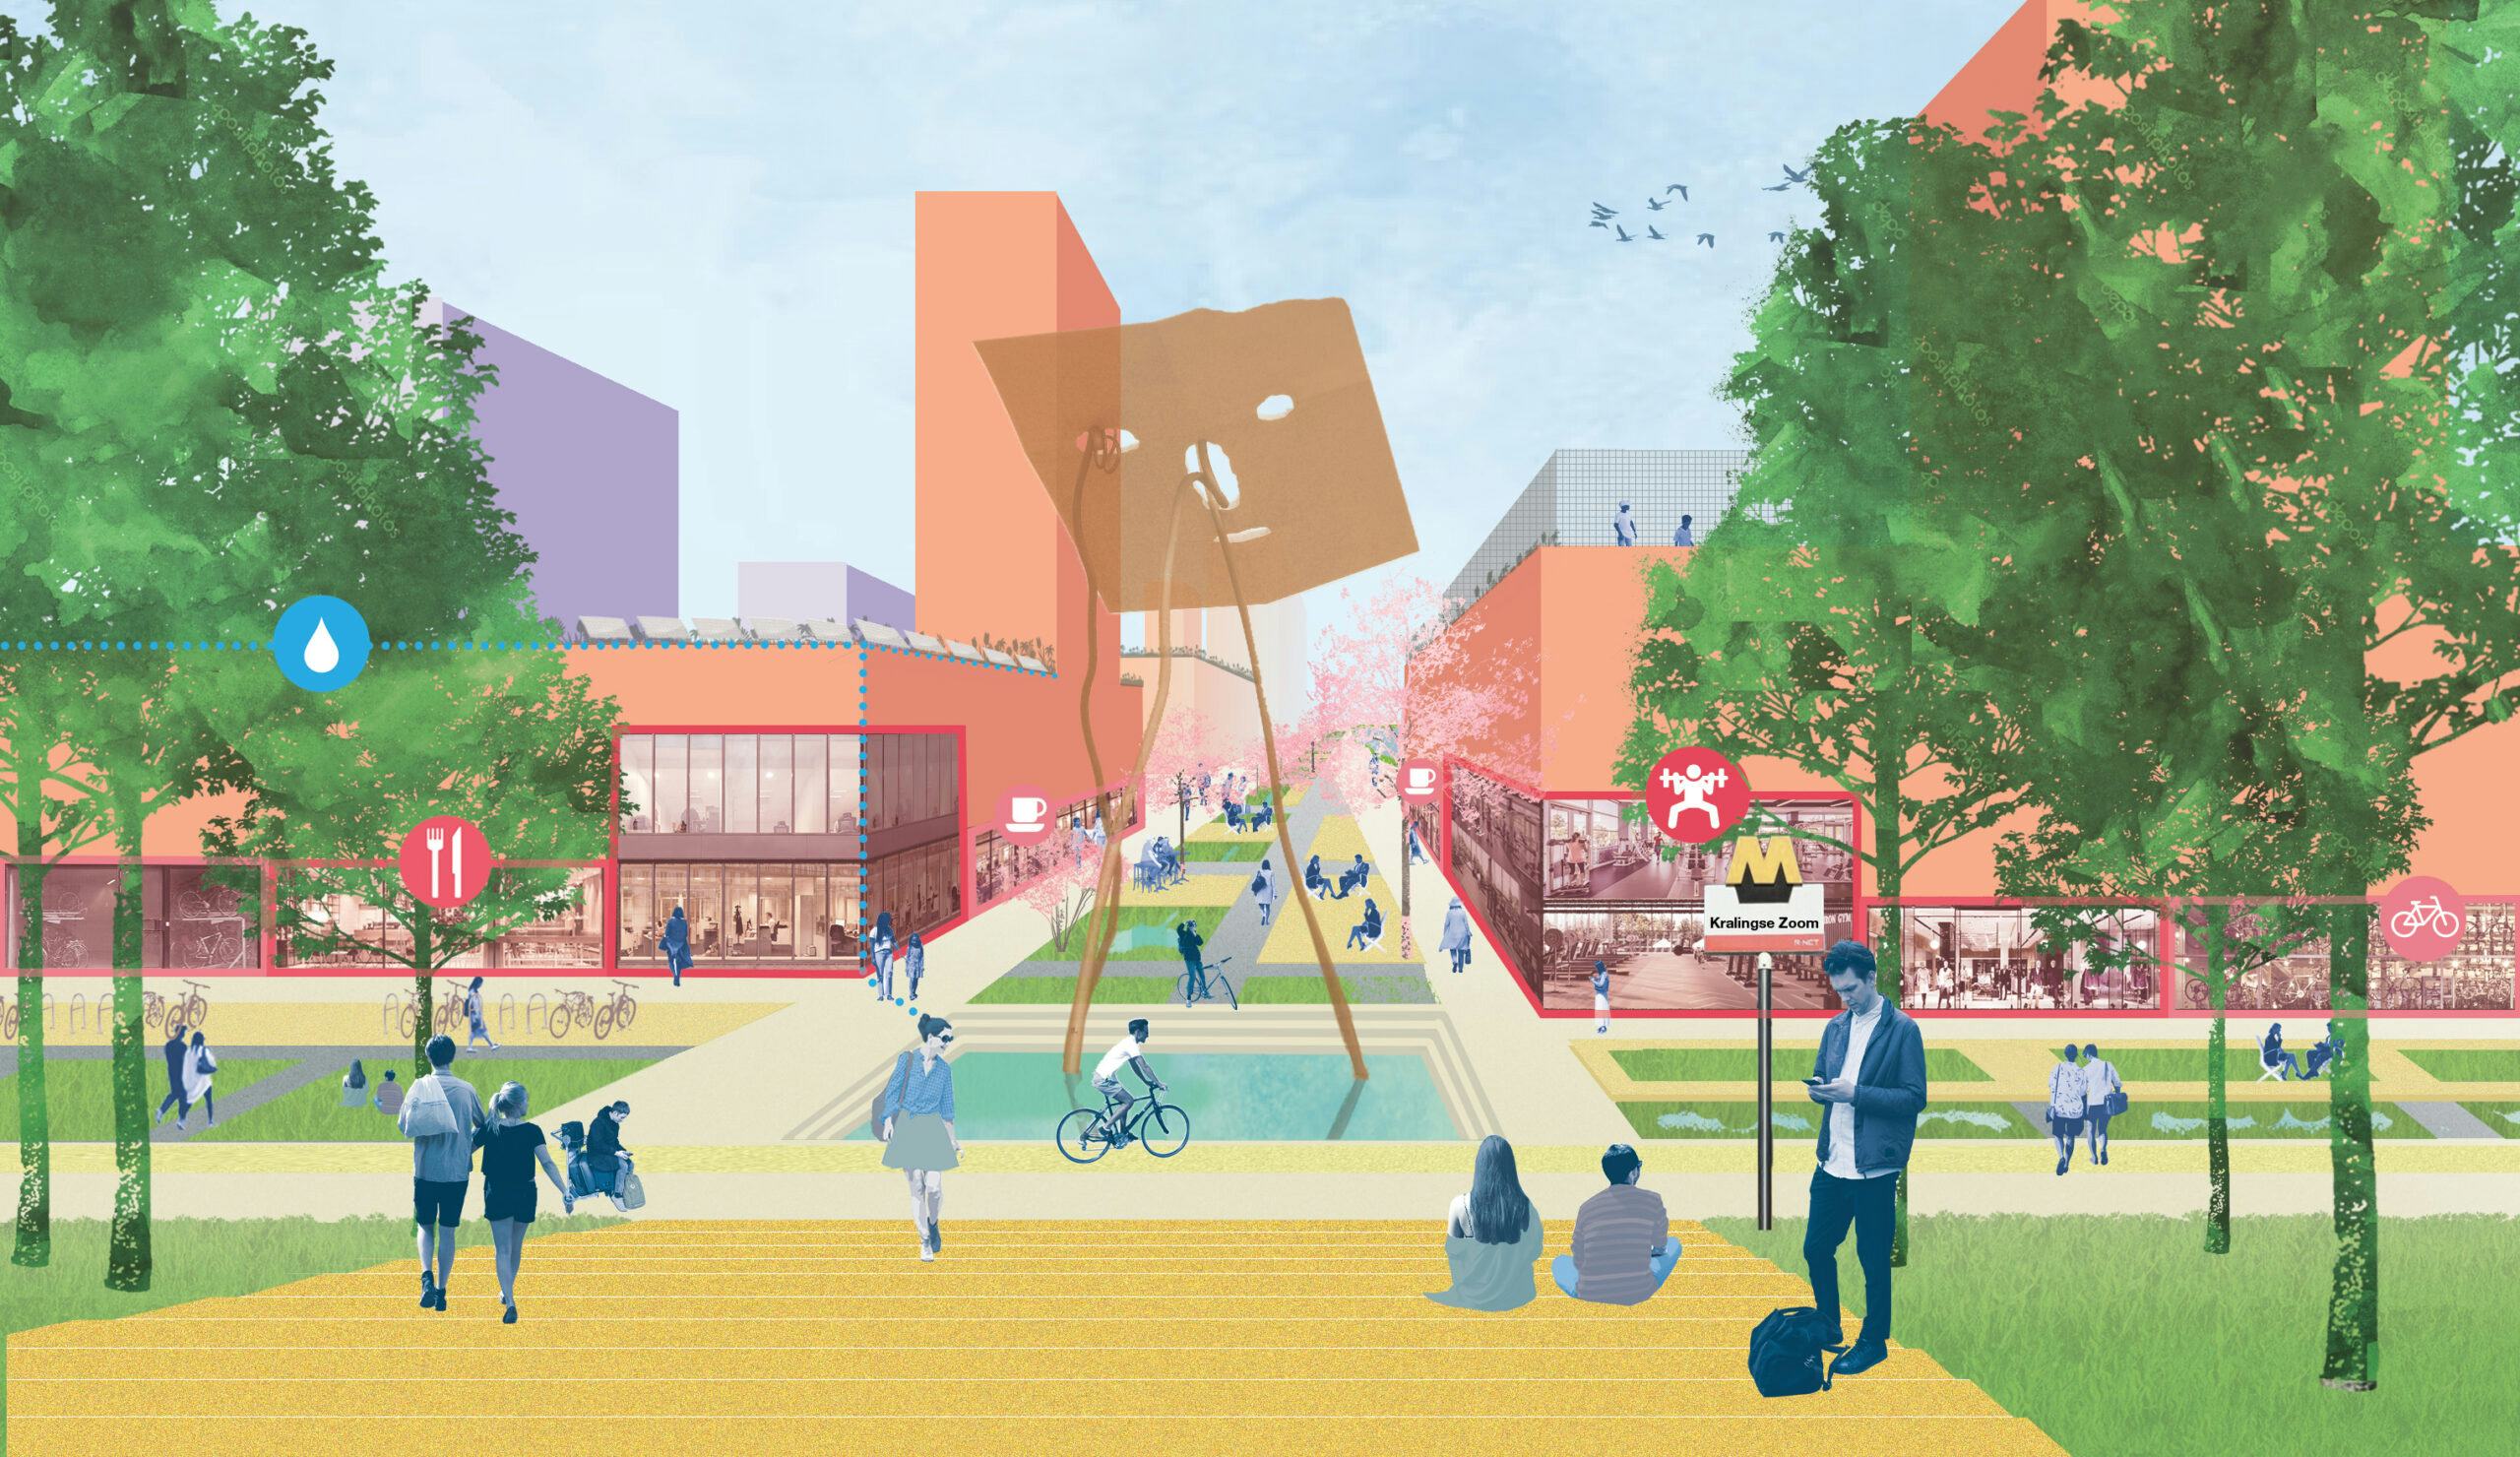 Illustratie van het nieuwe OV-knooppunt bij Kralingse Zoom, met ruimte voor wonen, werken en voorzieningen. De illustratie is gemaakt door Studio For New Realities en LOLA Landscape Architects.